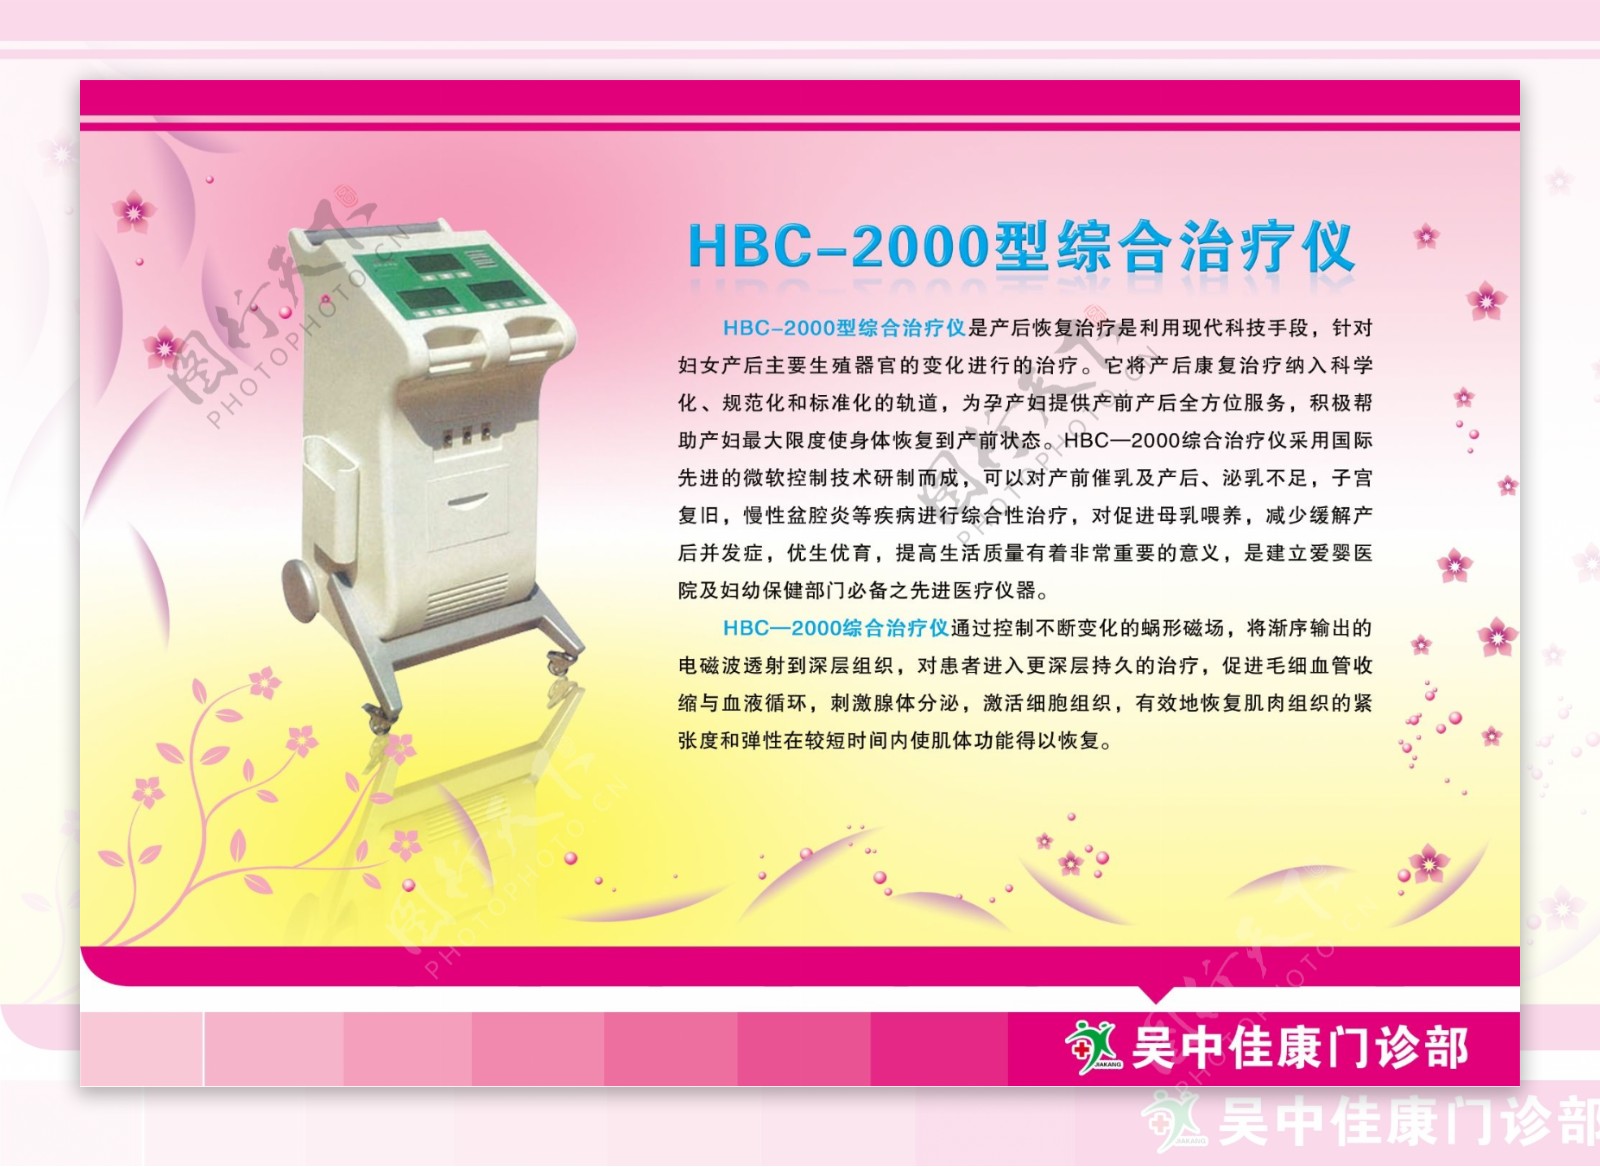 HBC2000型综合治疗仪图片